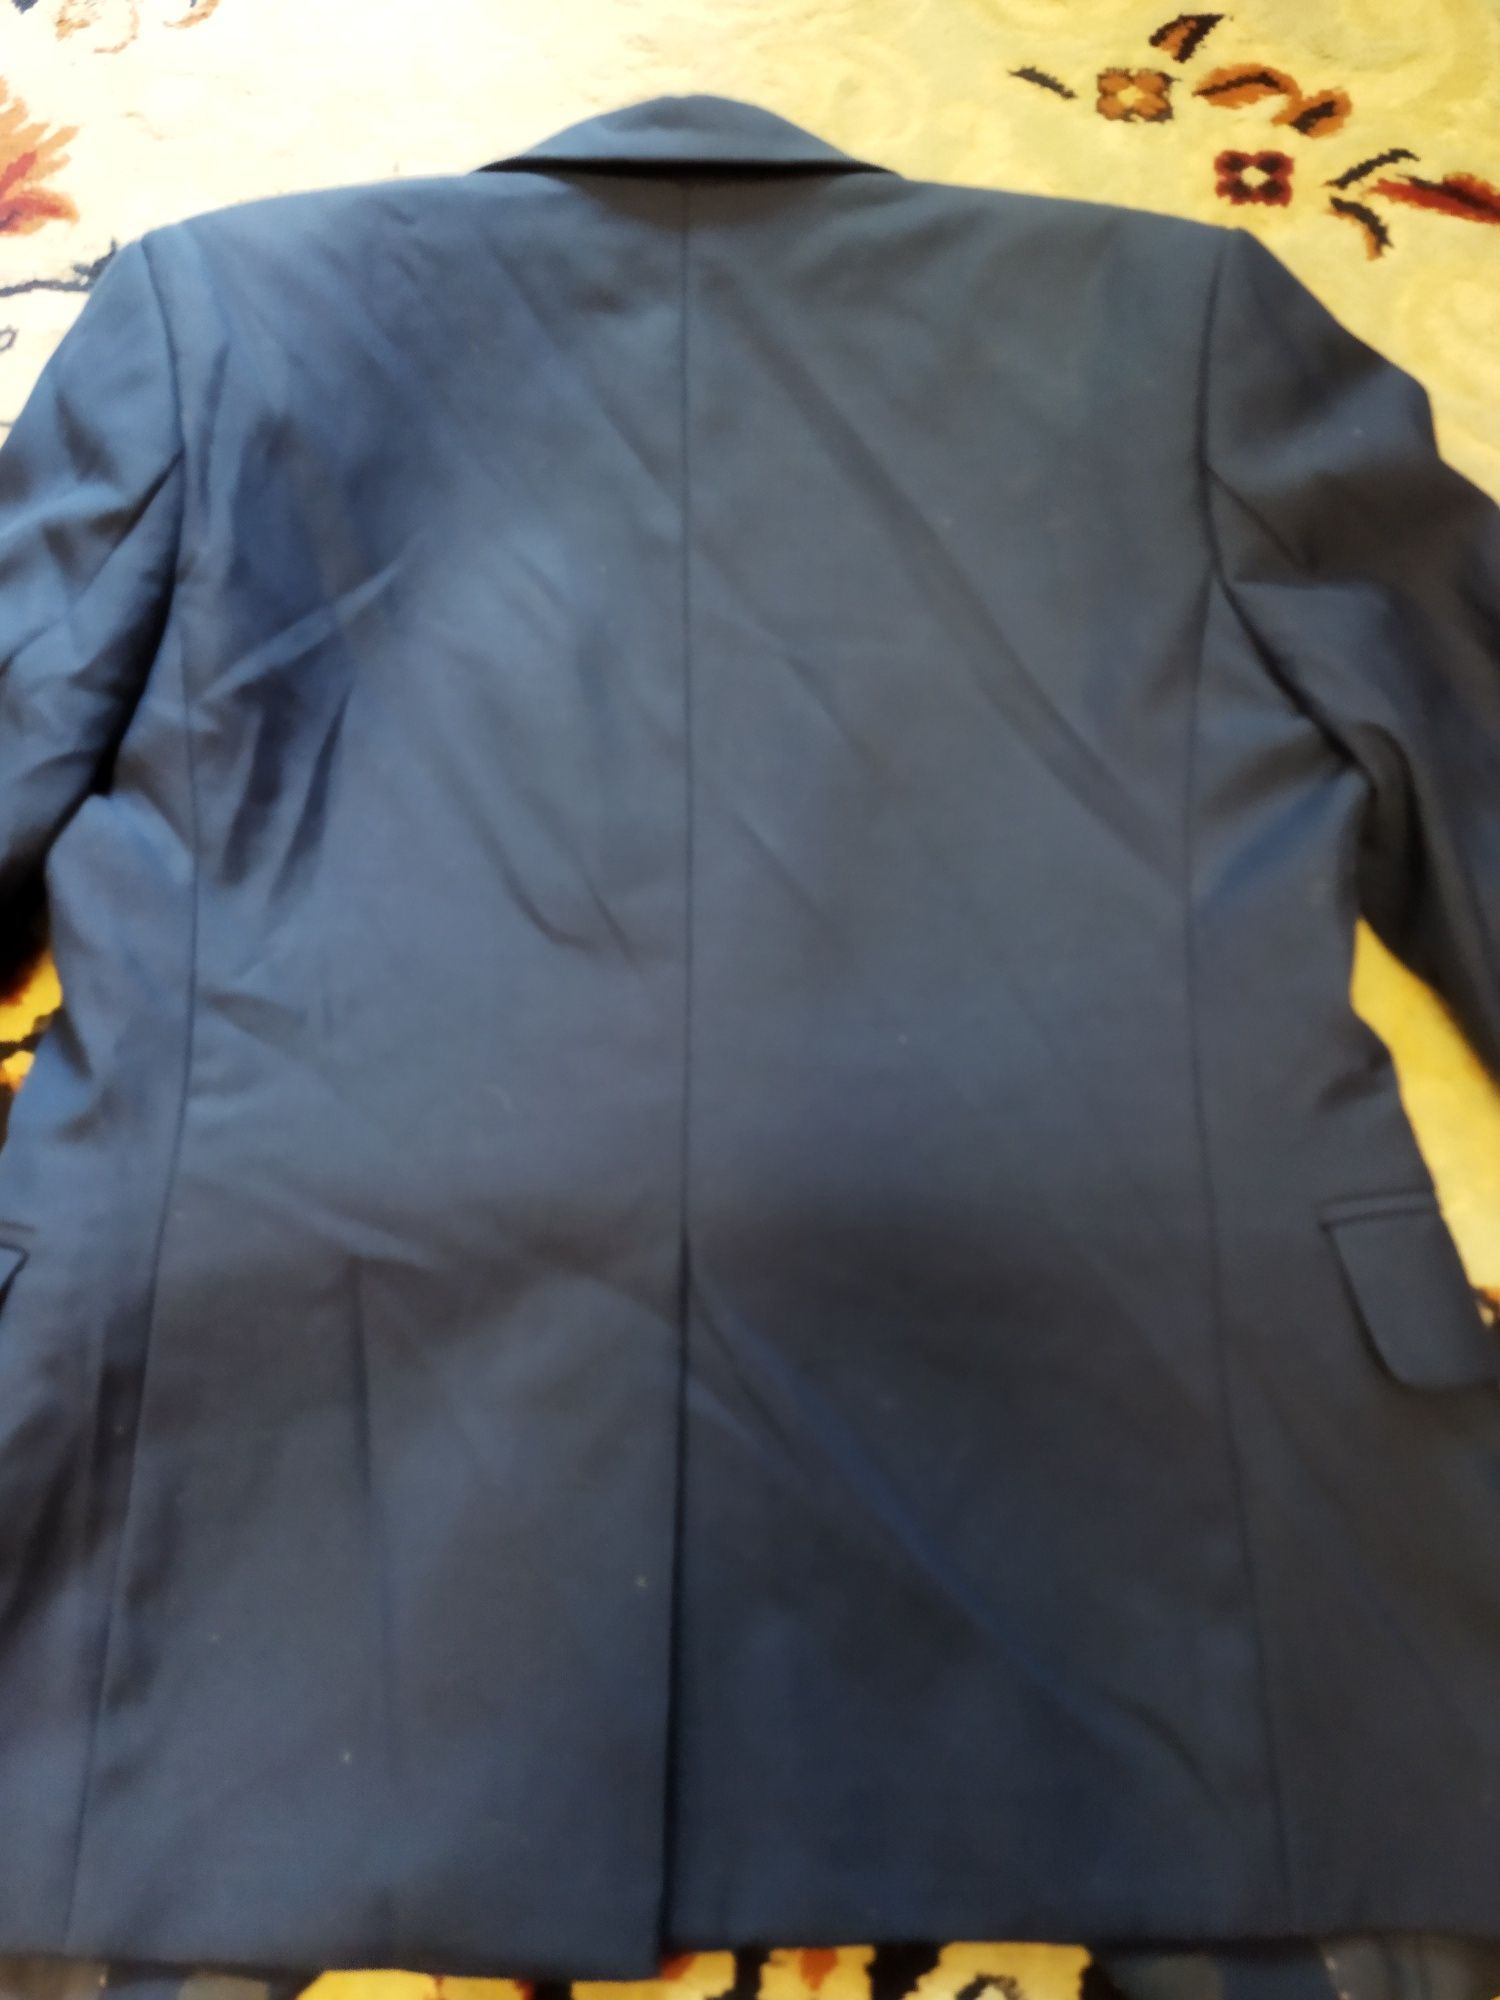 Школьный пиджак для мальчиков темно синего цвета.